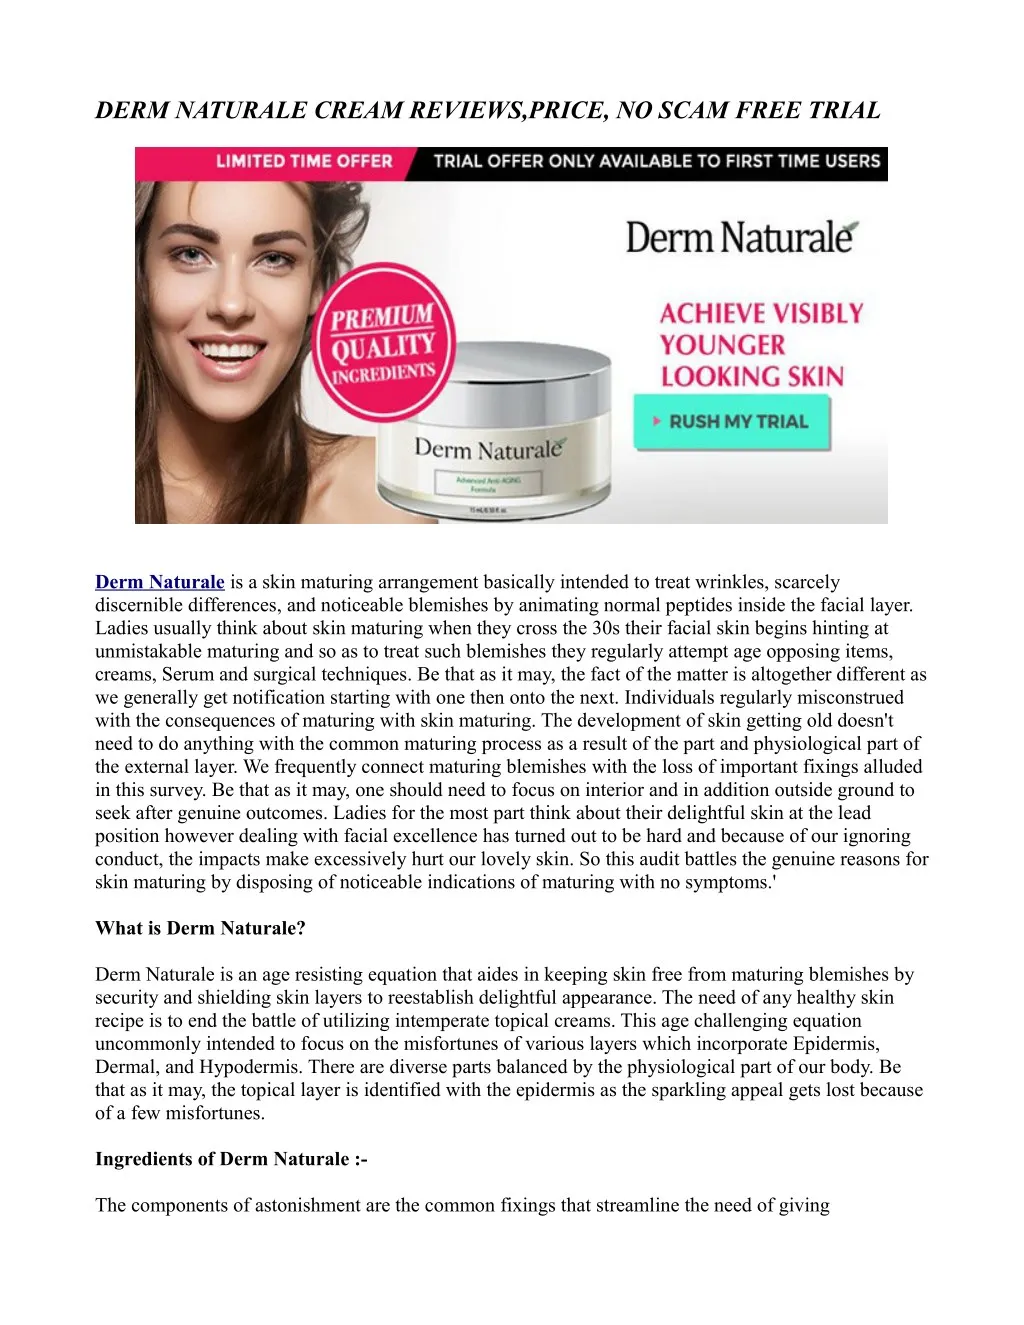 derm naturale cream reviews price no scam free